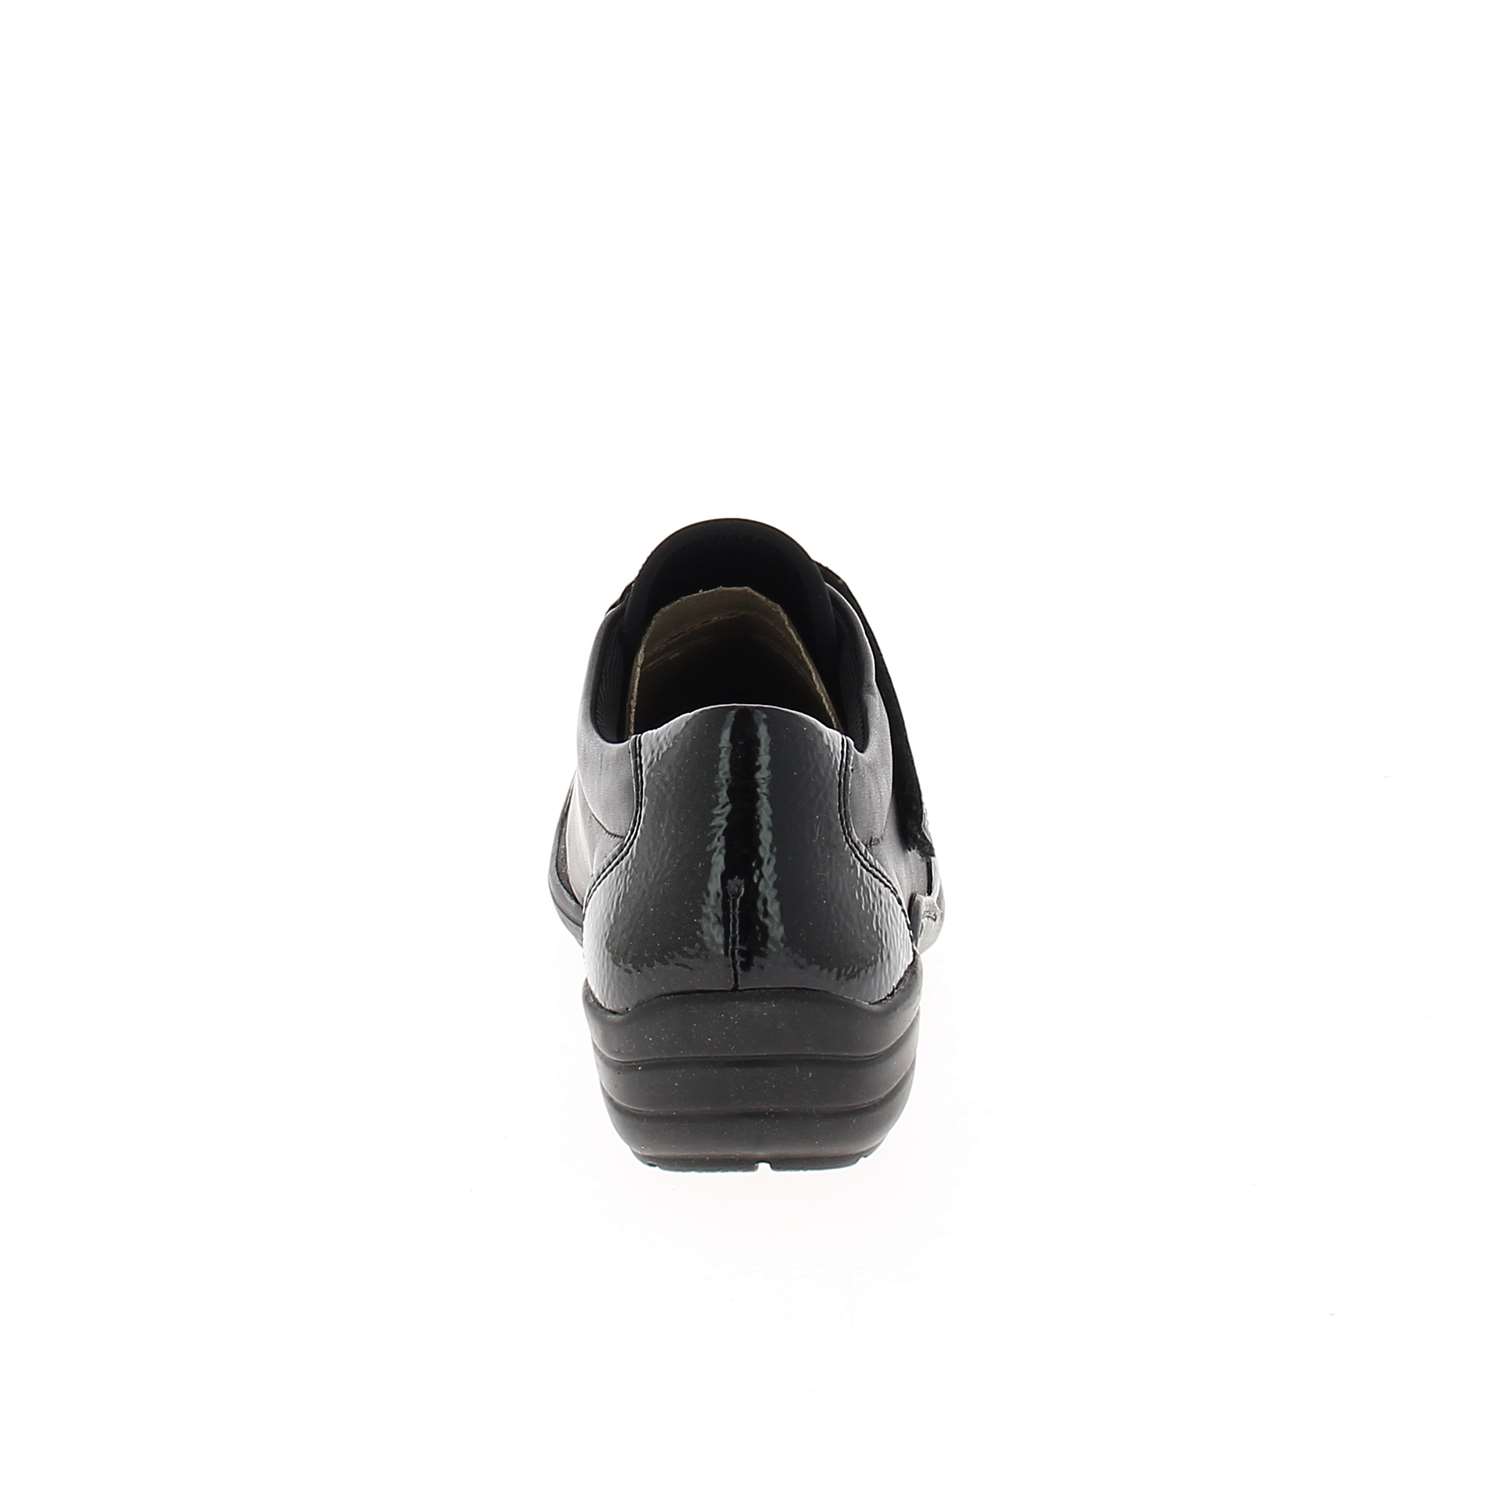 04 - RELIO - REMONTE - Chaussures à lacets - Textile